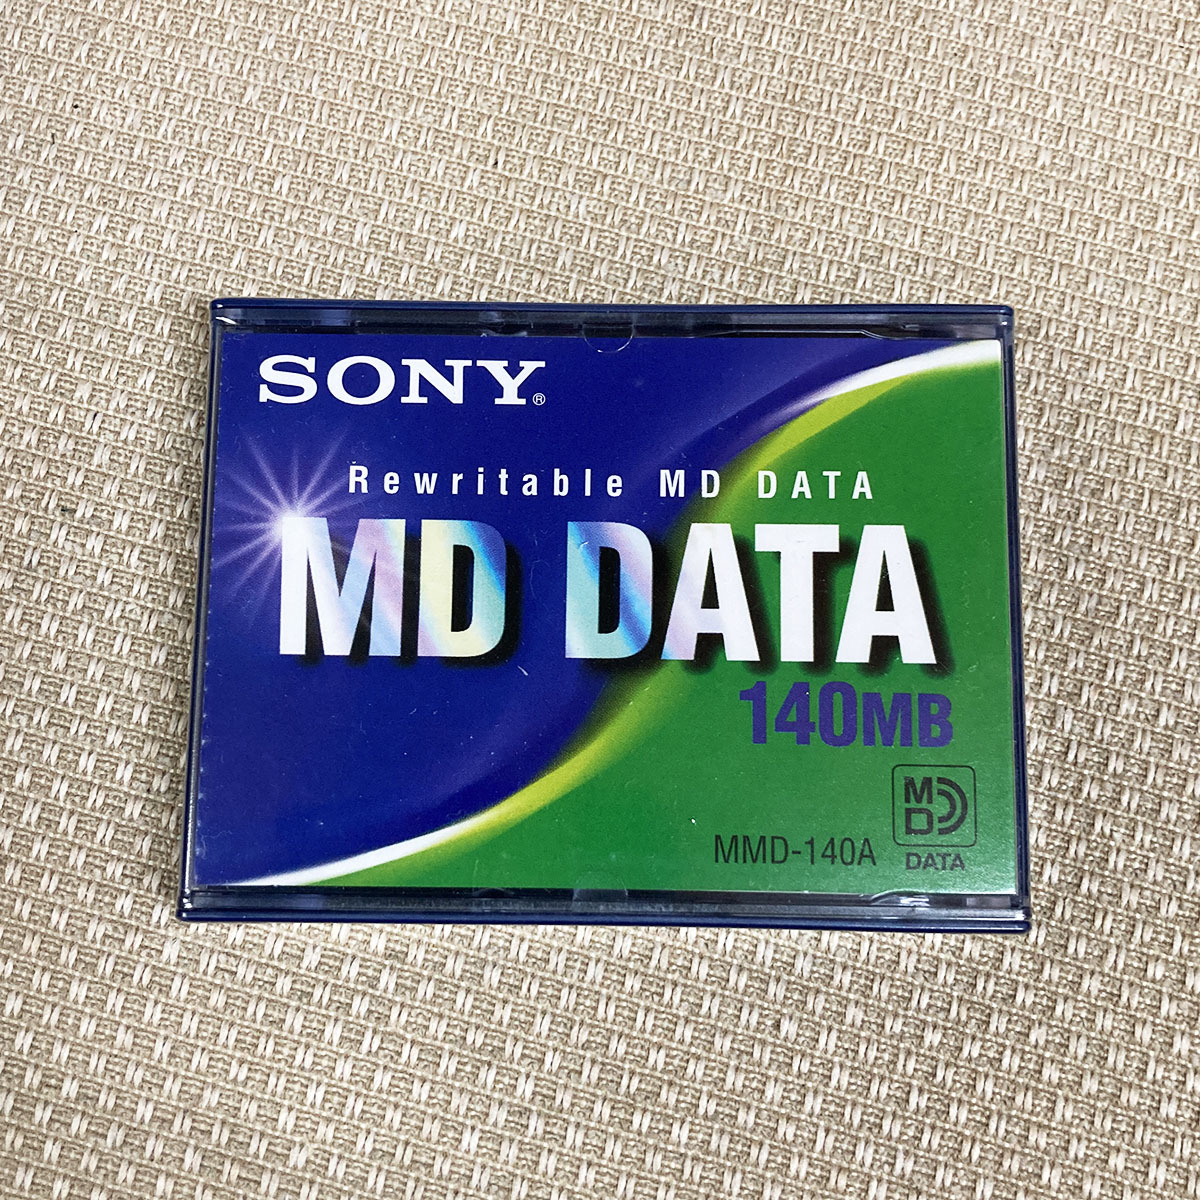 日本限定 未開封品 SONY MD DATA ソニー No.3 MMD-140A 充実の品 140MB